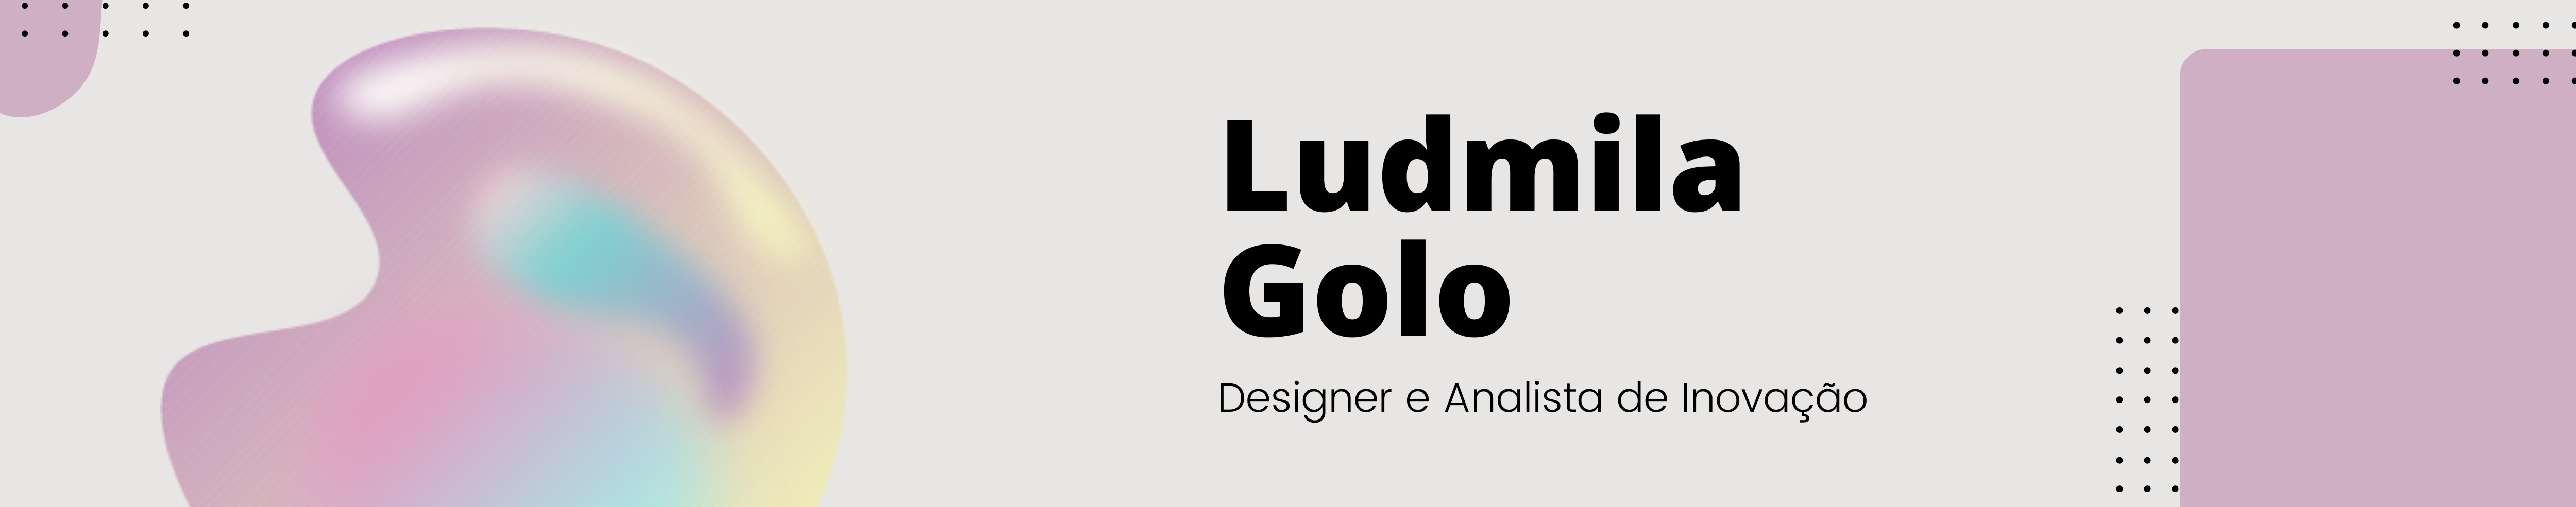 Ludmila Golo's profile banner